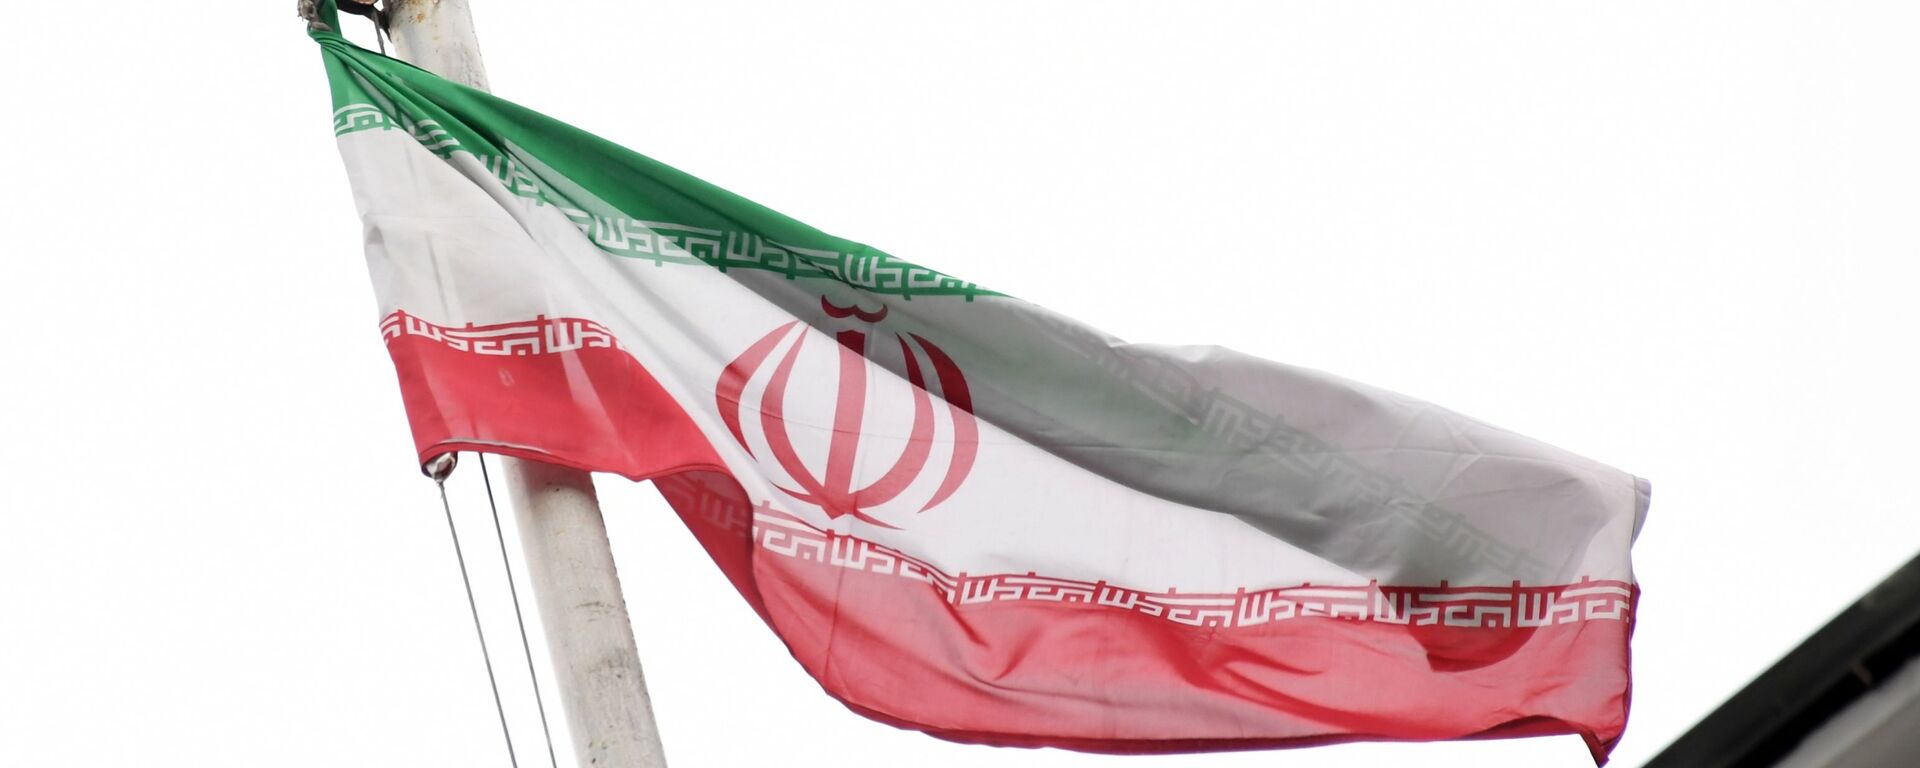 Флаг посольства Исламской Республики Иран. - Sputnik Latvija, 1920, 04.12.2020